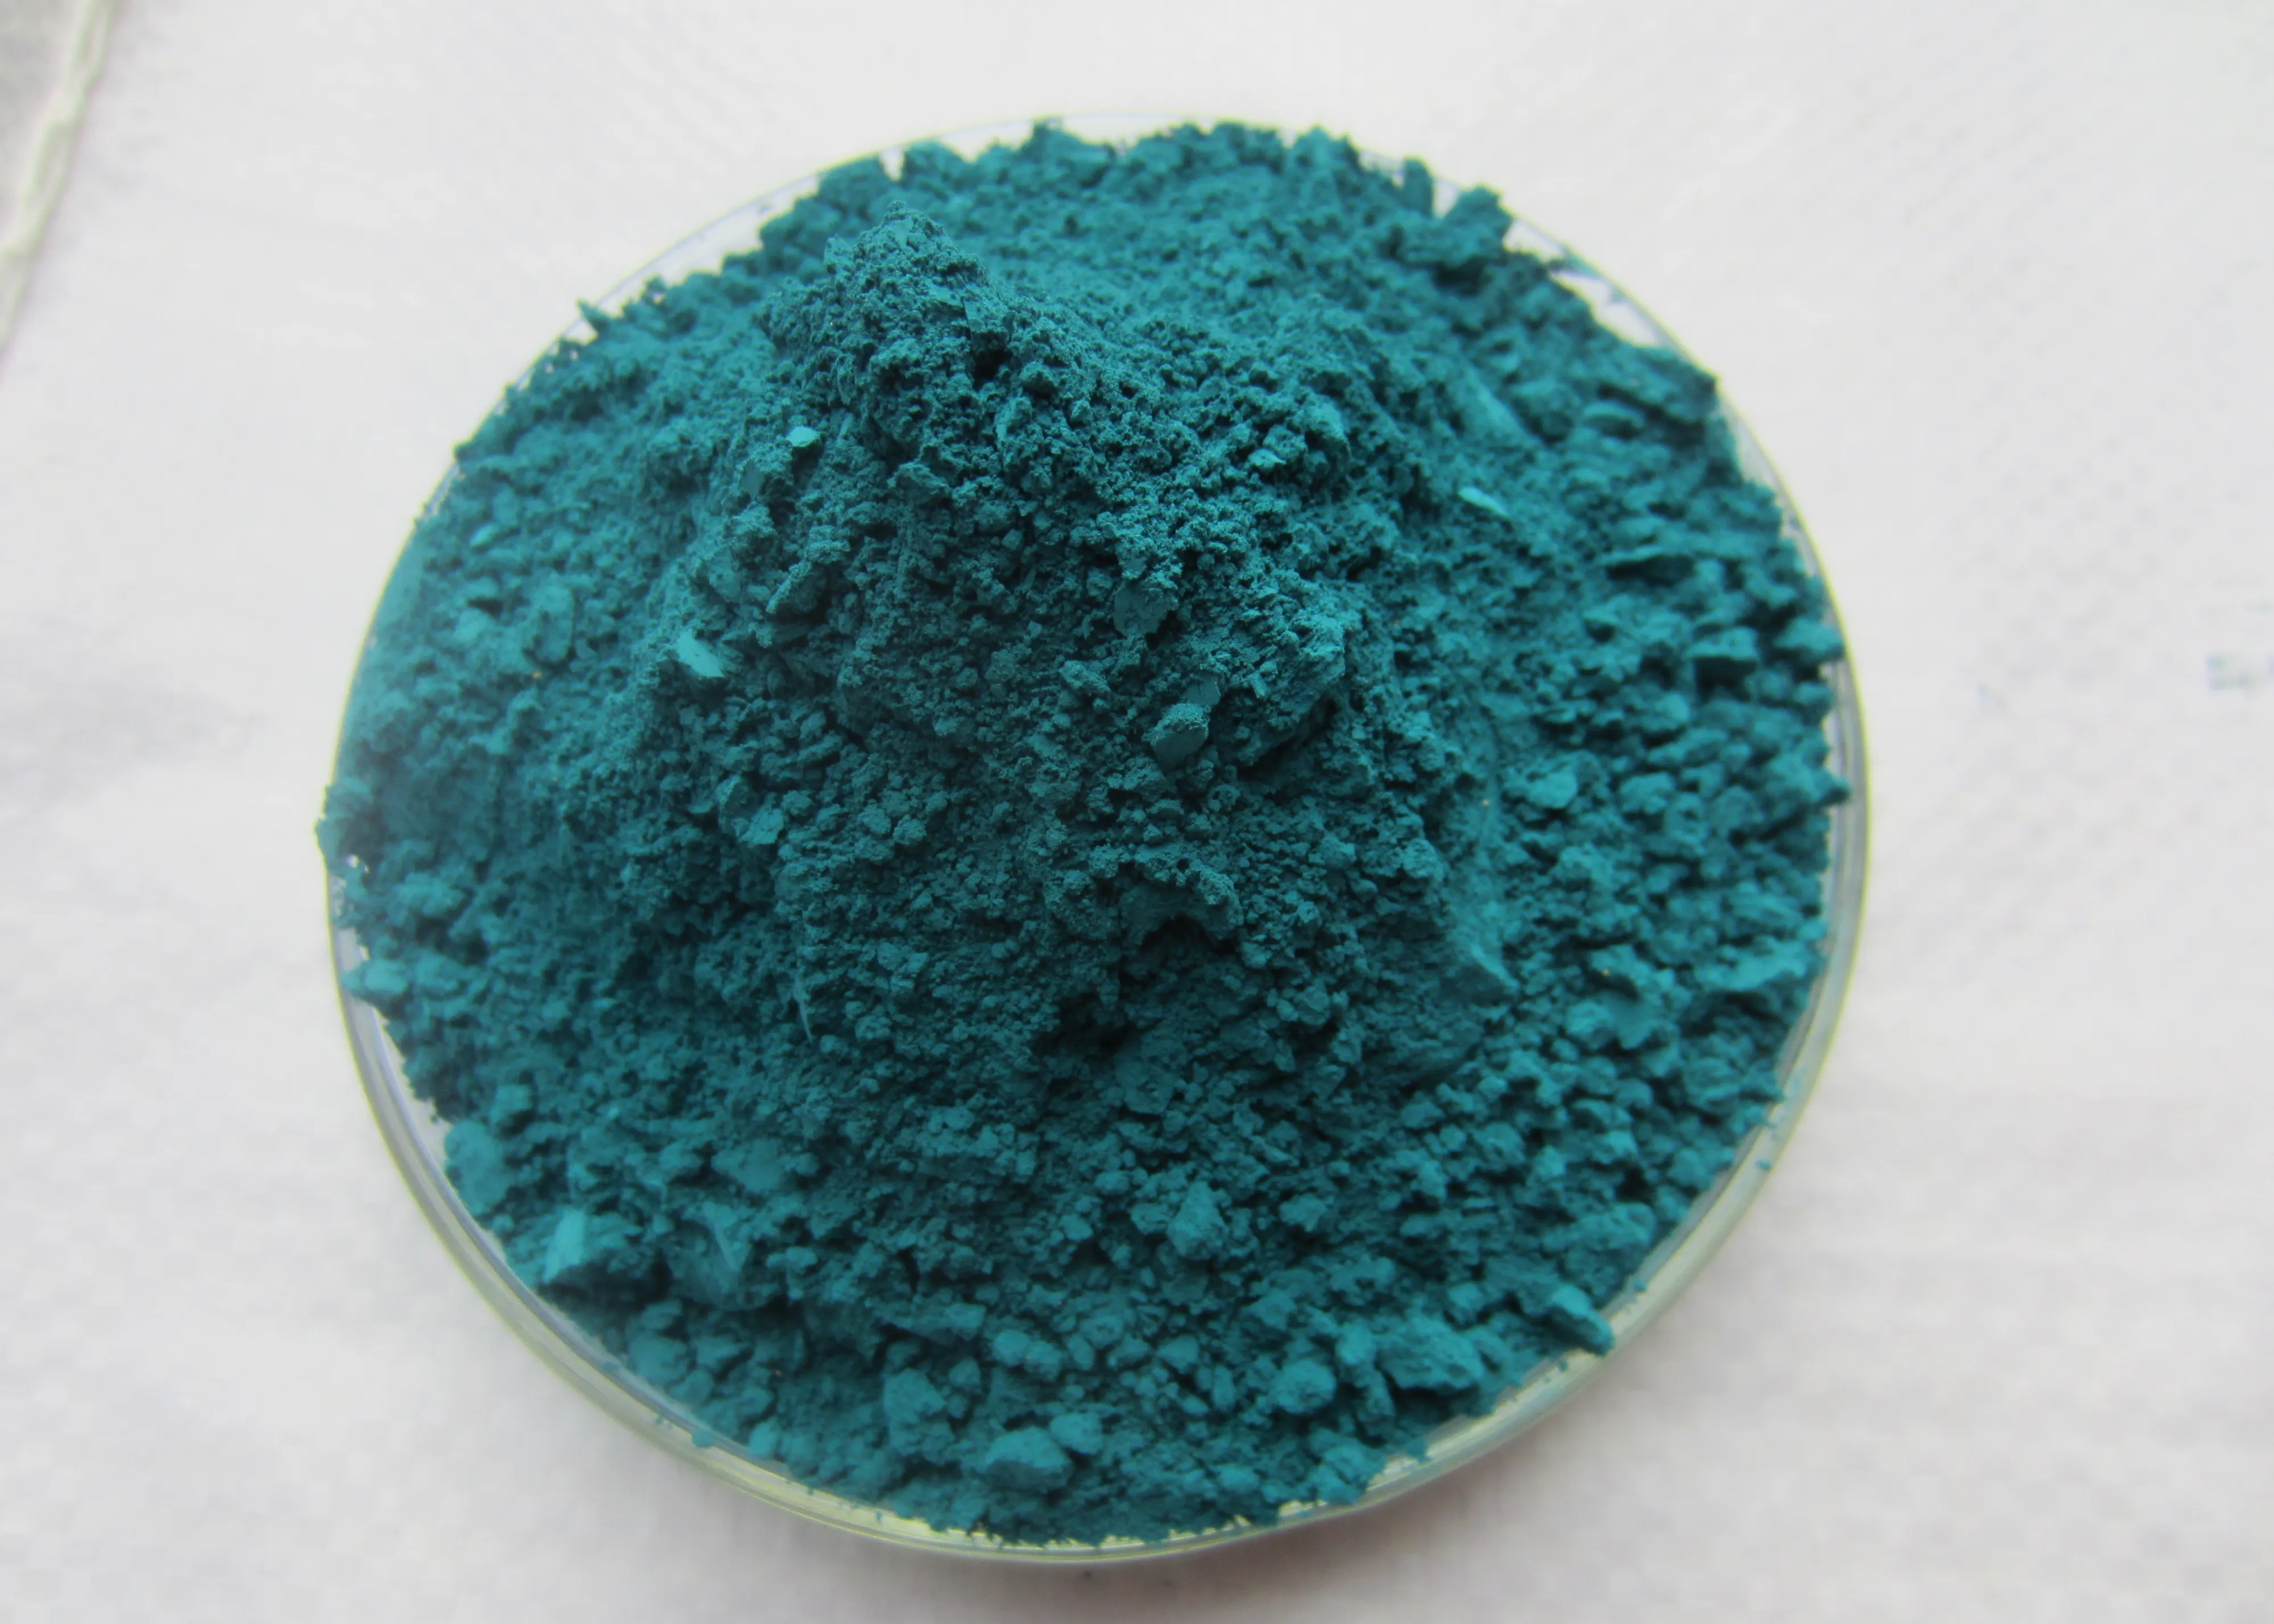 Cobalt chromium blue